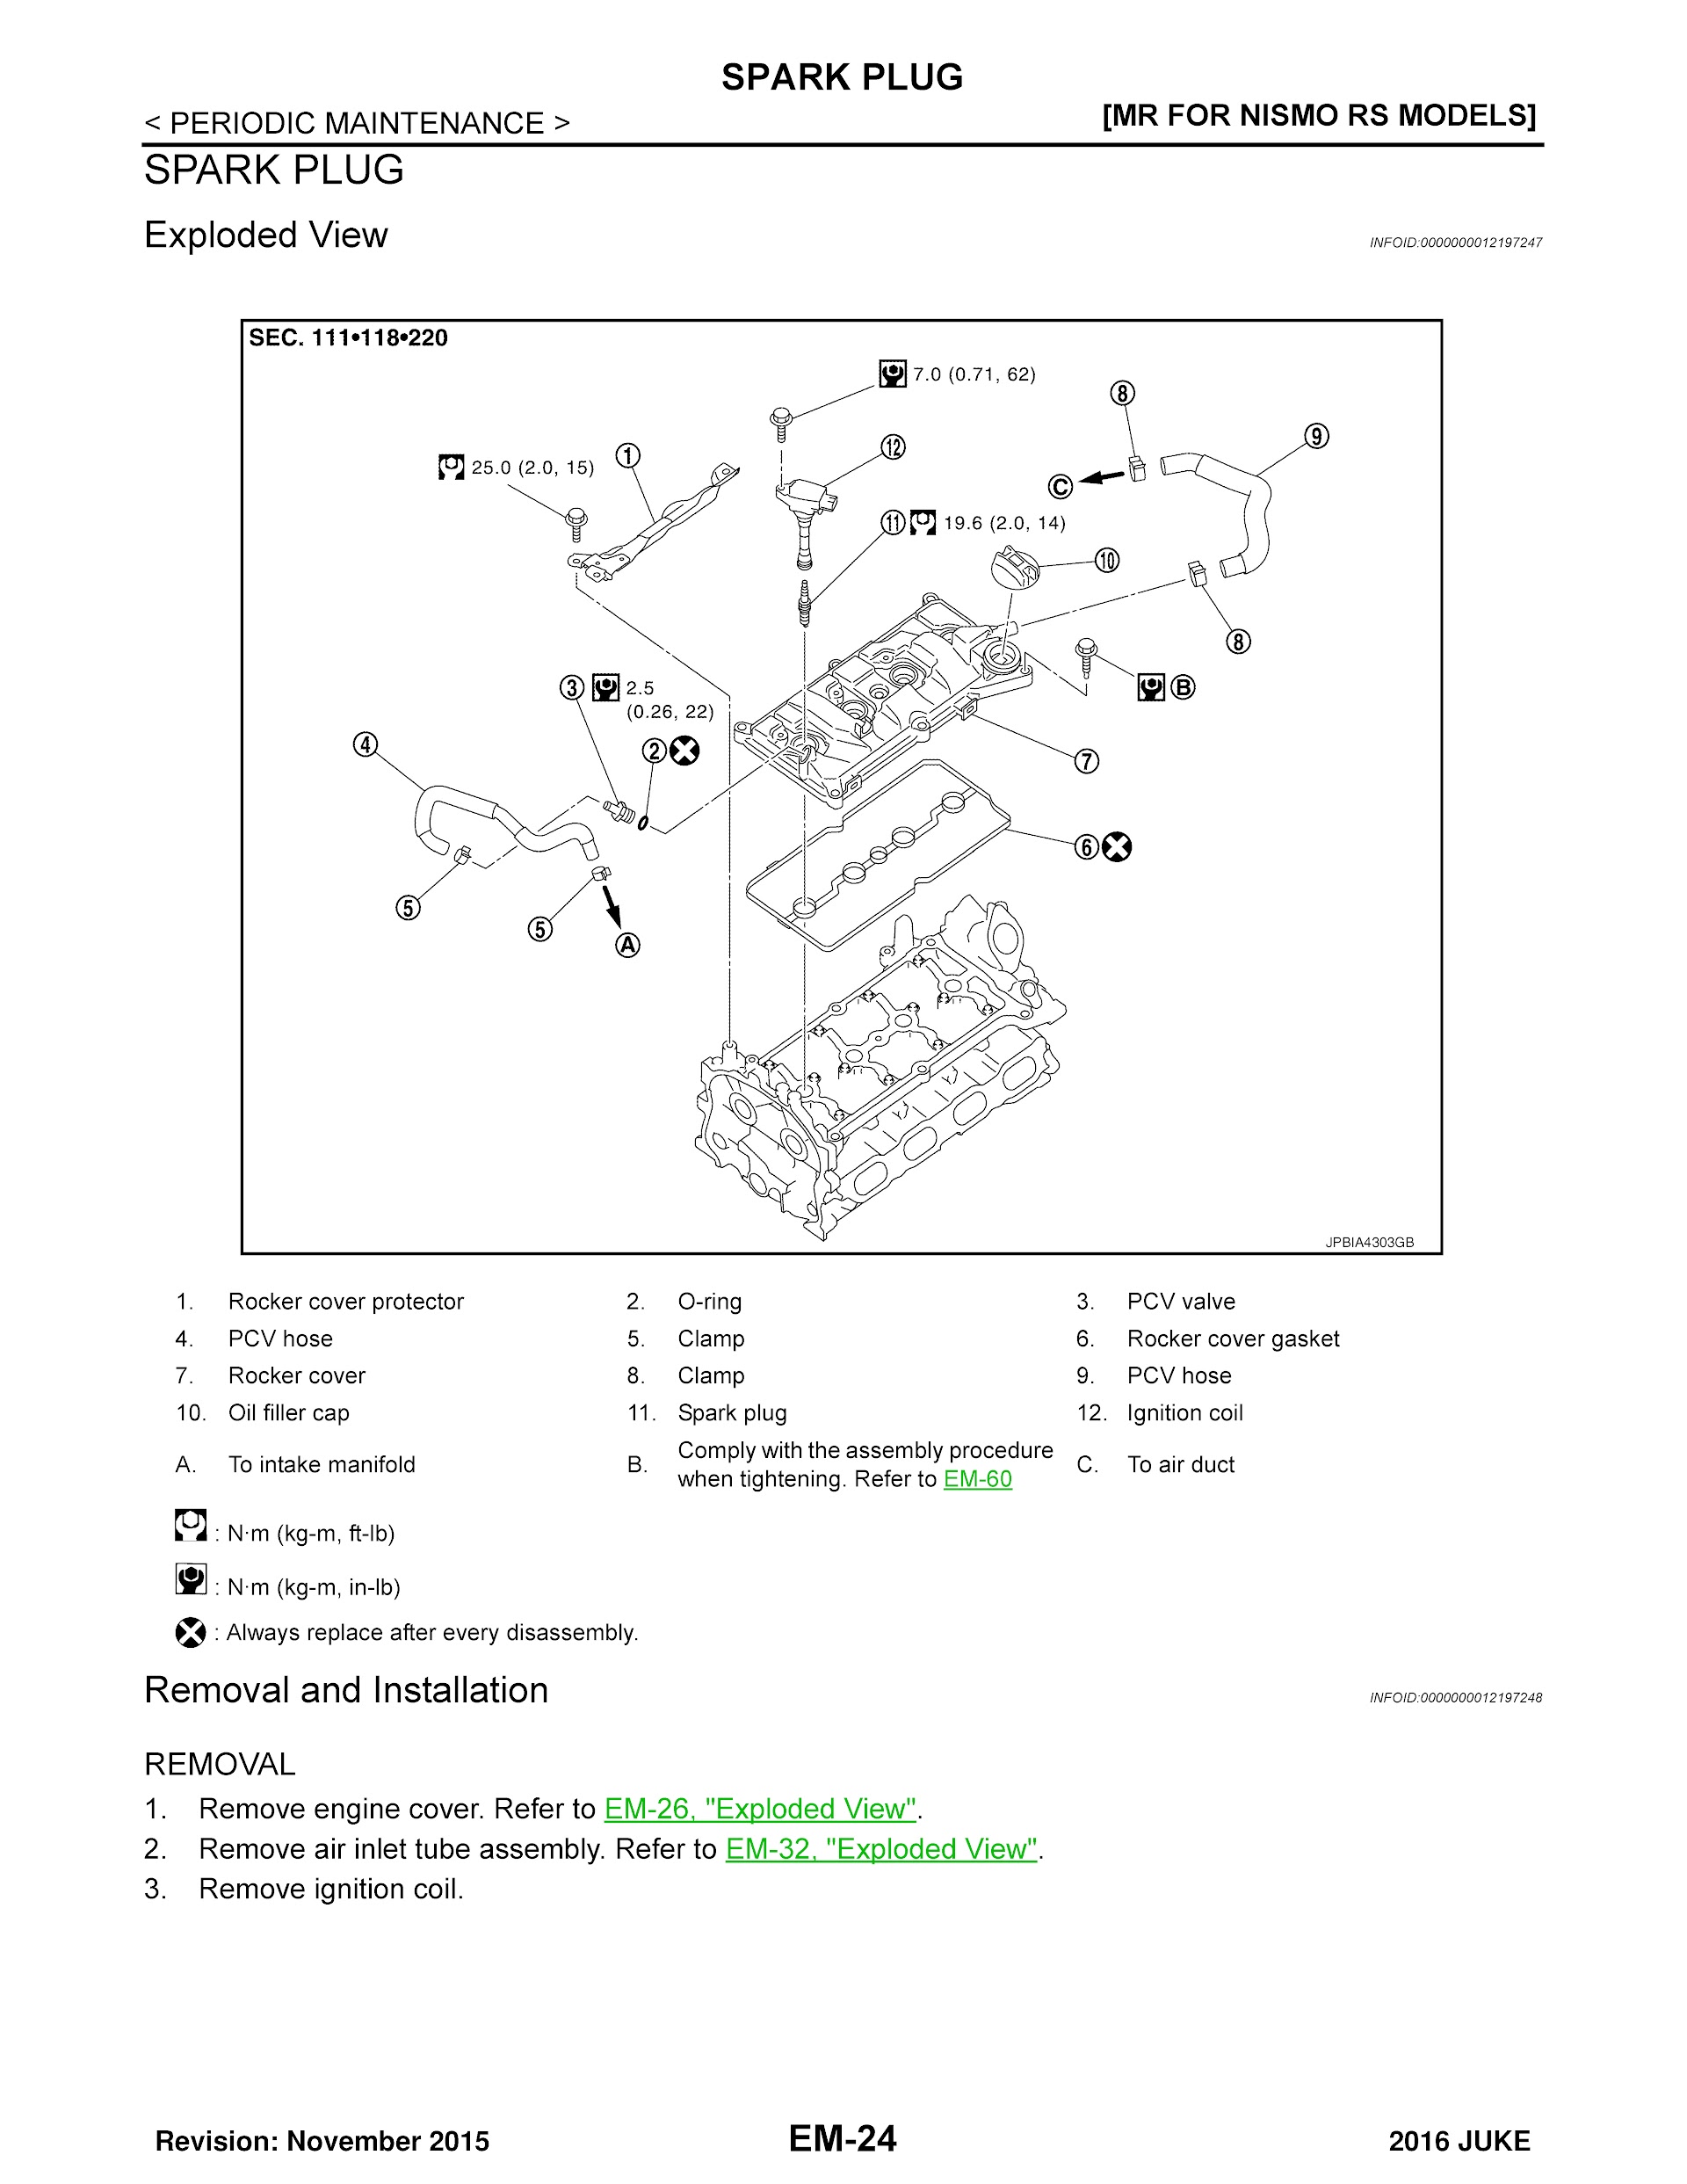 CONTENTS: 2016 Nissan Juke Repair Manual, Spark Plug Repalcement